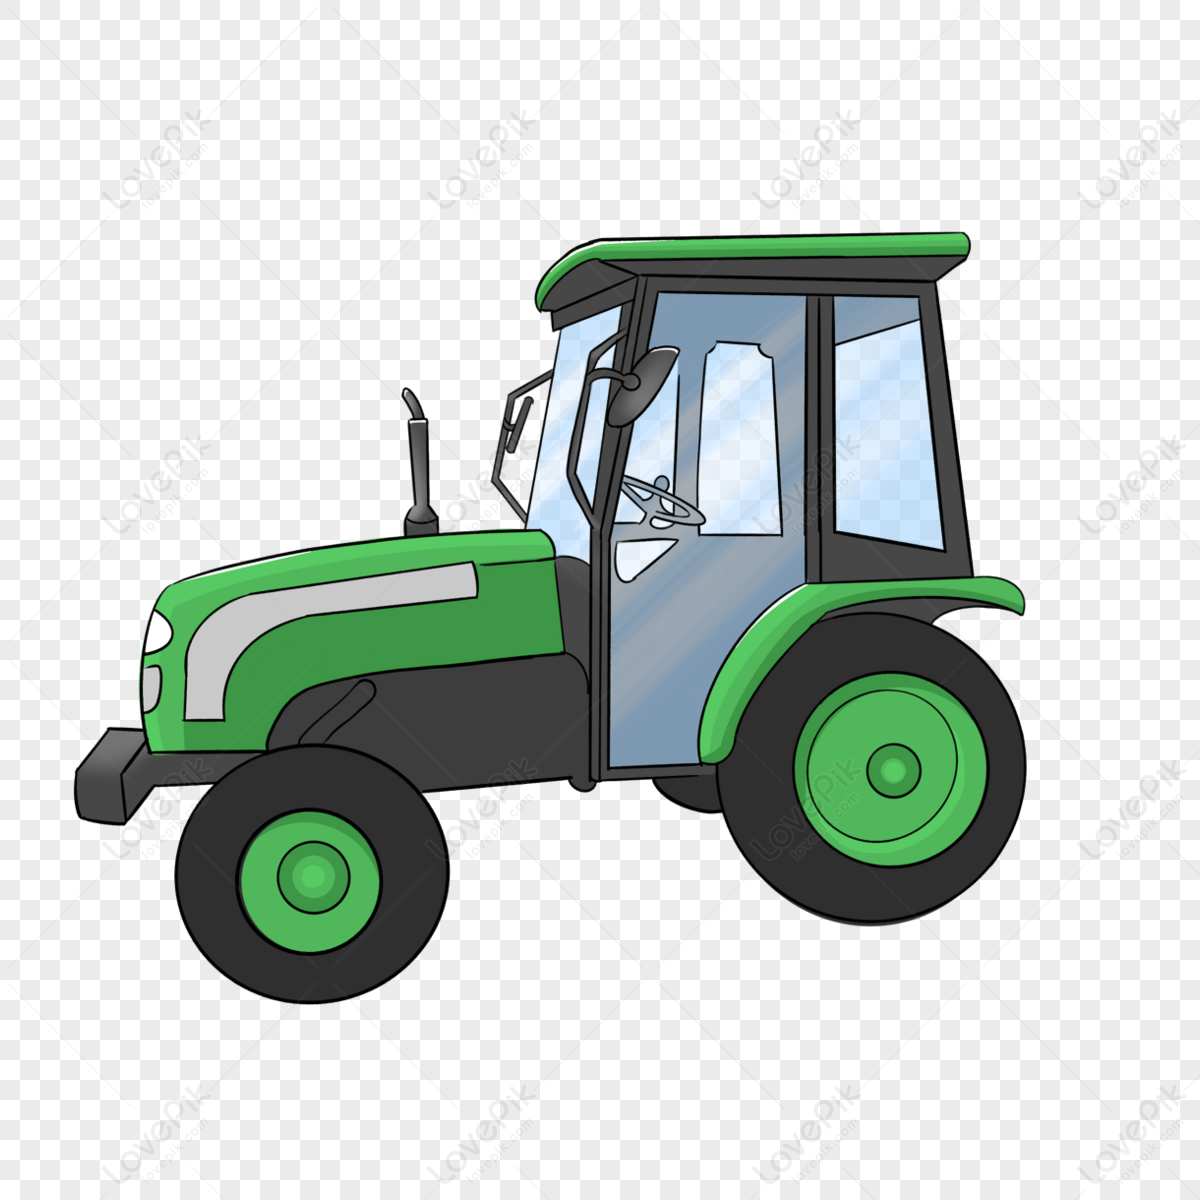 Dark Green Tractor Clip Art,diesel Engine Tractor Clip Art,diesel ...